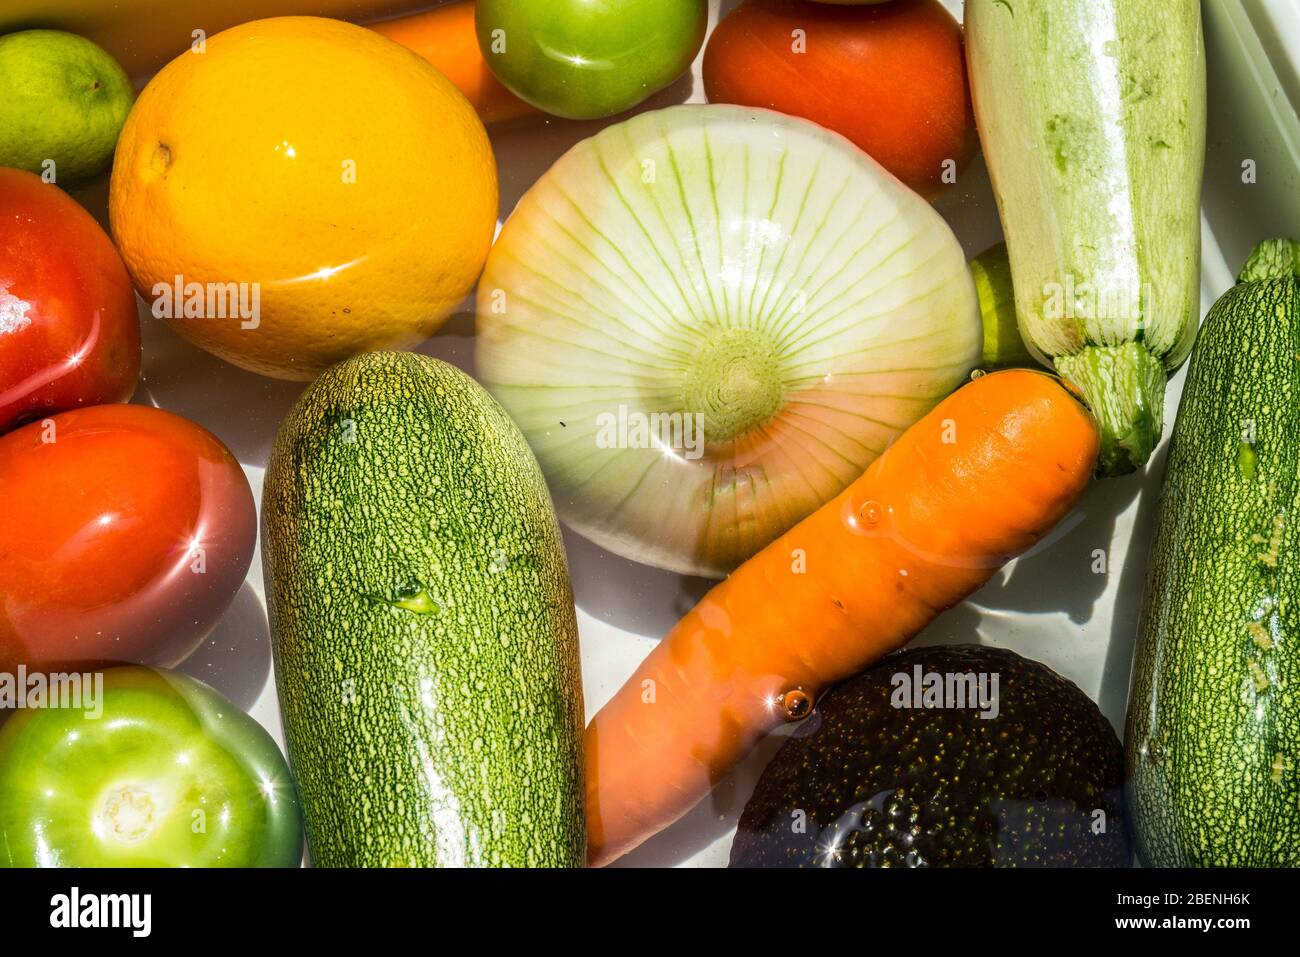 Lavage des fruits et légumes dans de l'eau savonneuse pour la désinfection du coronavirus. Banque D'Images